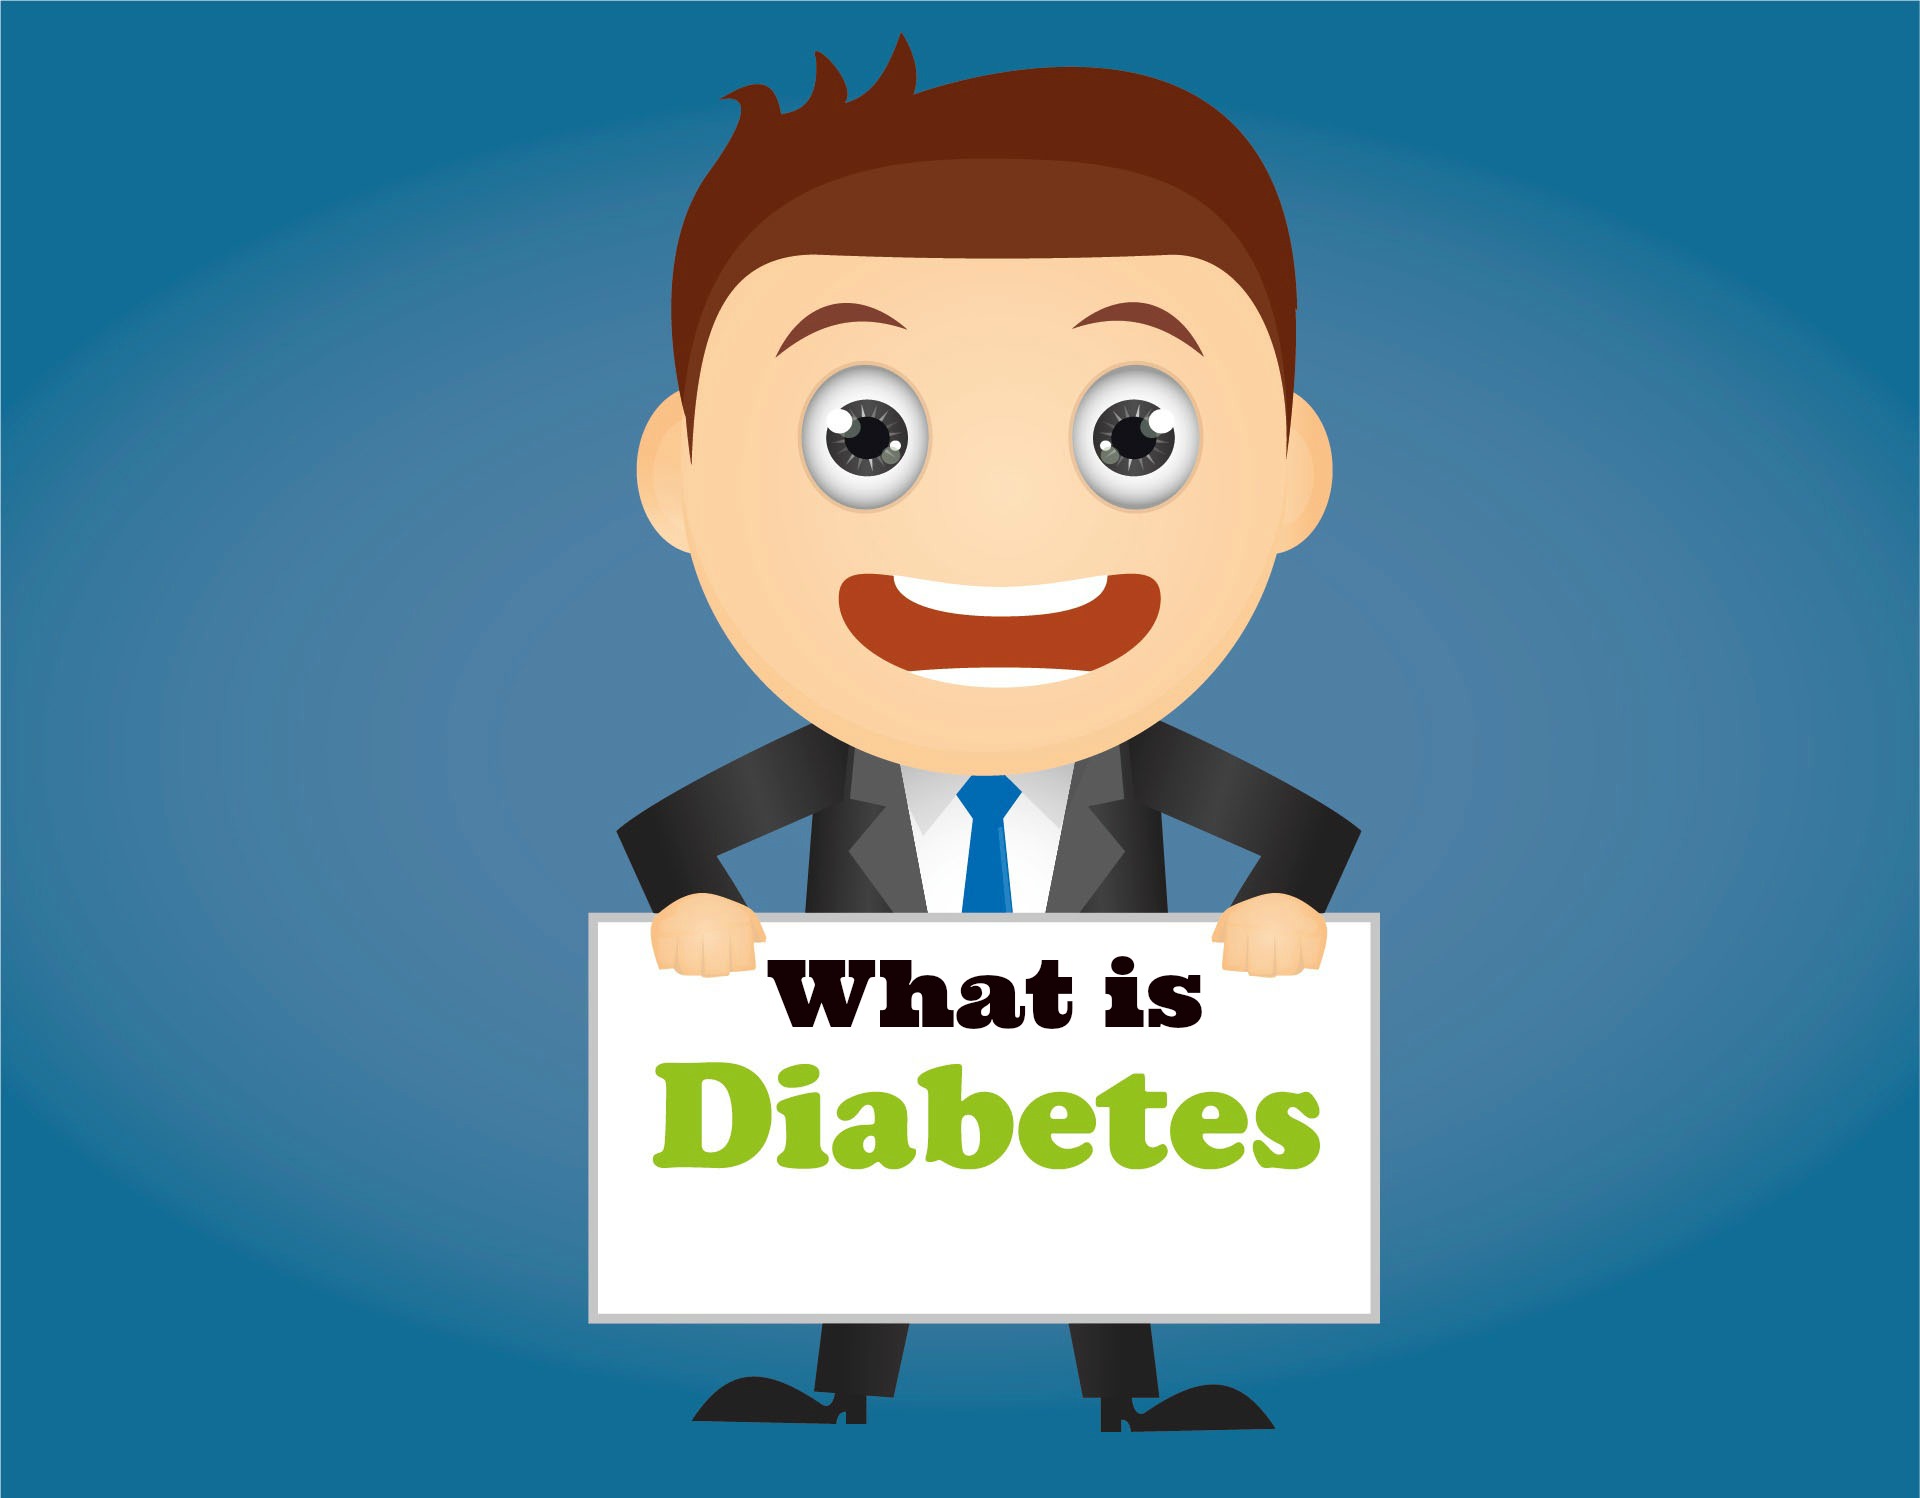 diabetes What is-1270346